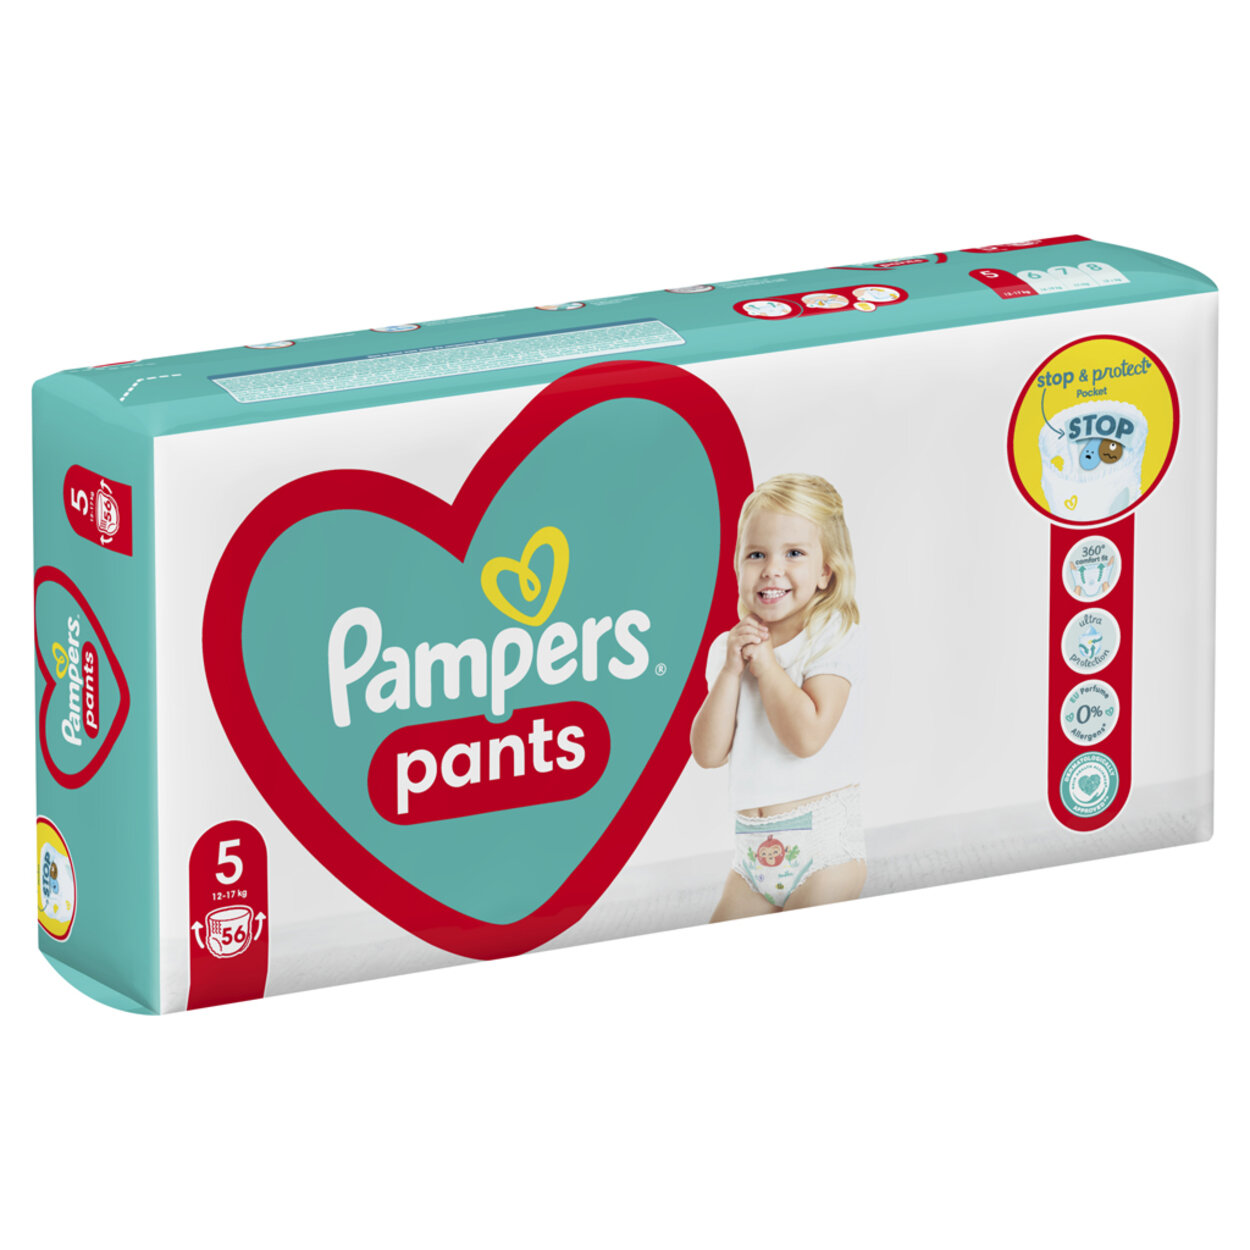 PAMPERS Plienky nohavičkové Active Baby Pants veľ. 5 (56 ks) 12-17 kg |  Predeti.sk